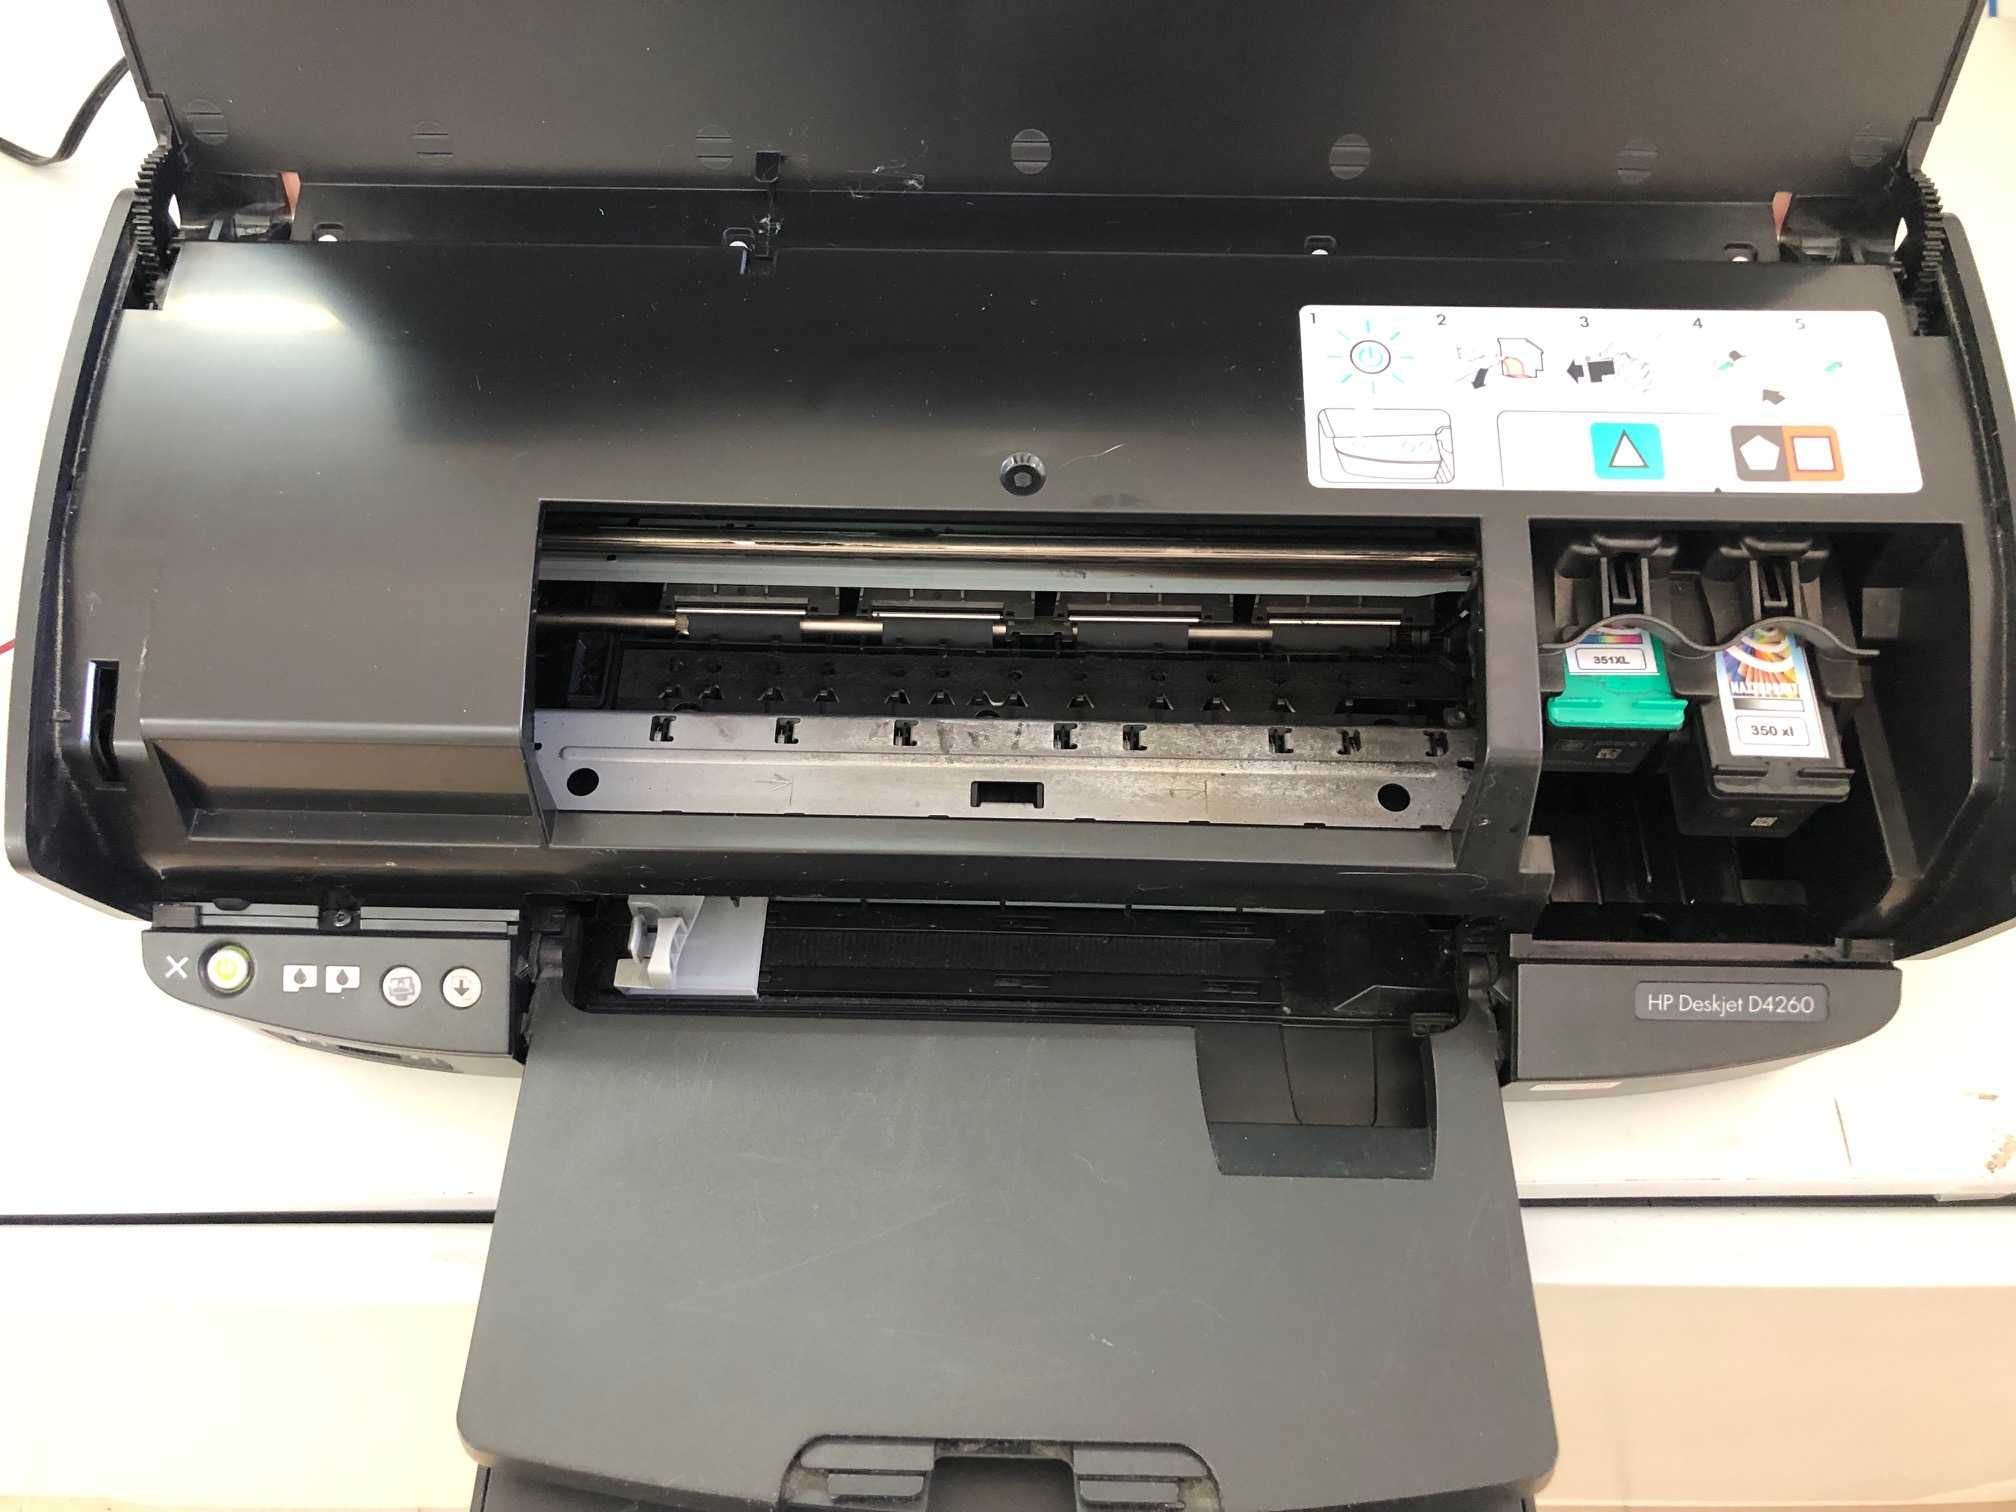 Impressora HP Deskjet D4260 em ótimo estado como nova.